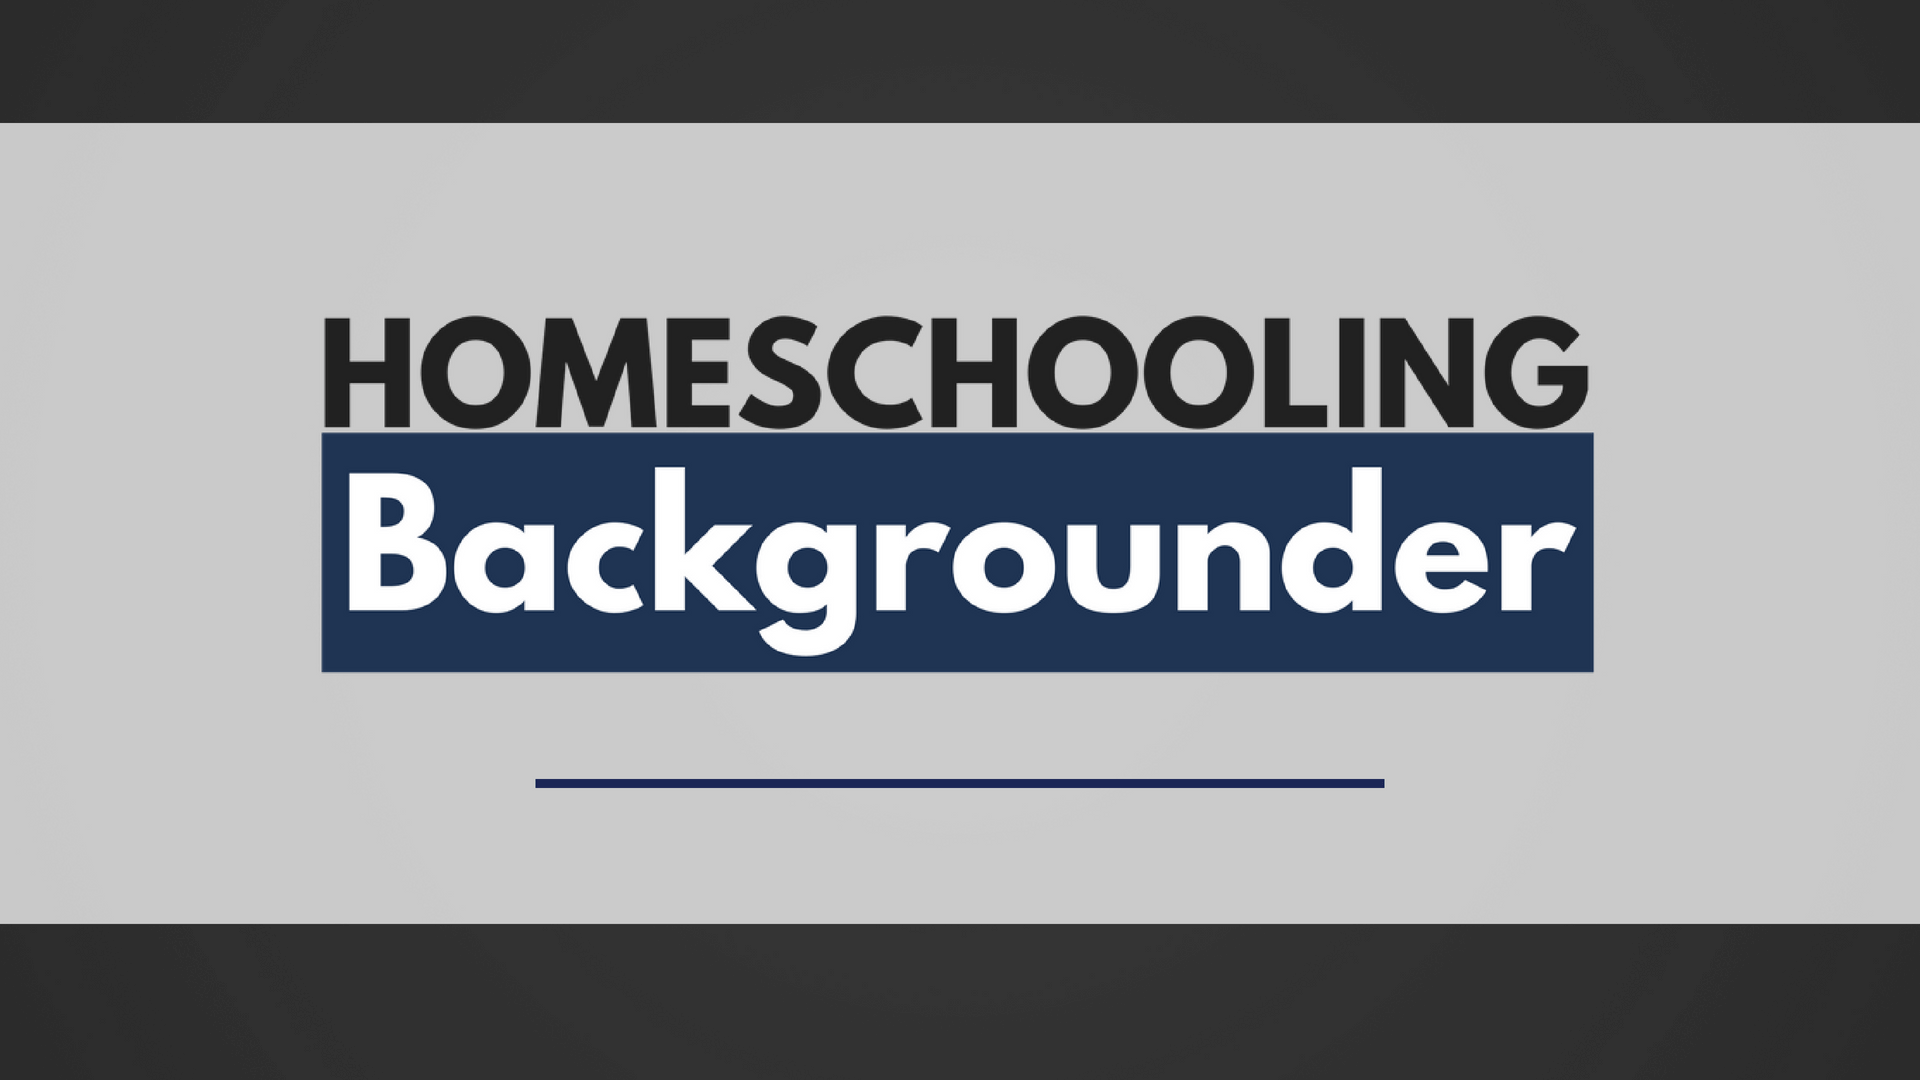 (c) Homeschoolingbackgrounder.com